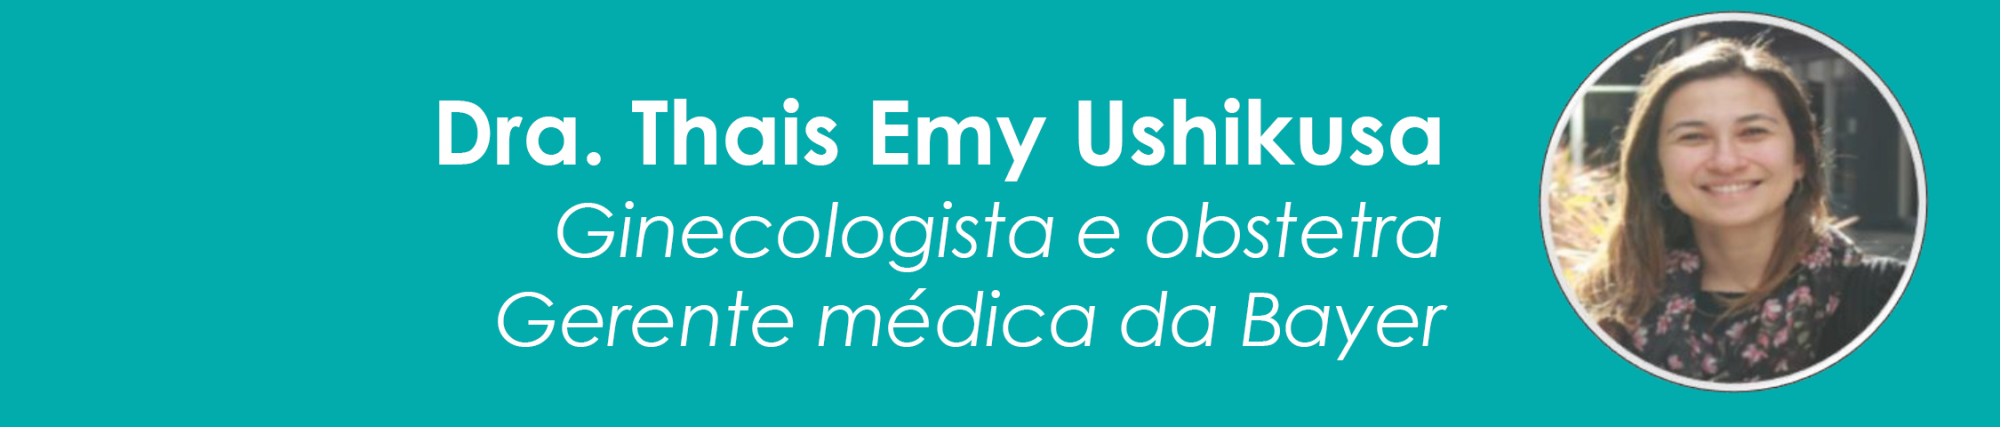 Dra. Thias Emy Ushikusa, Ginecologista e obstetra Gerente mdica da Bayer